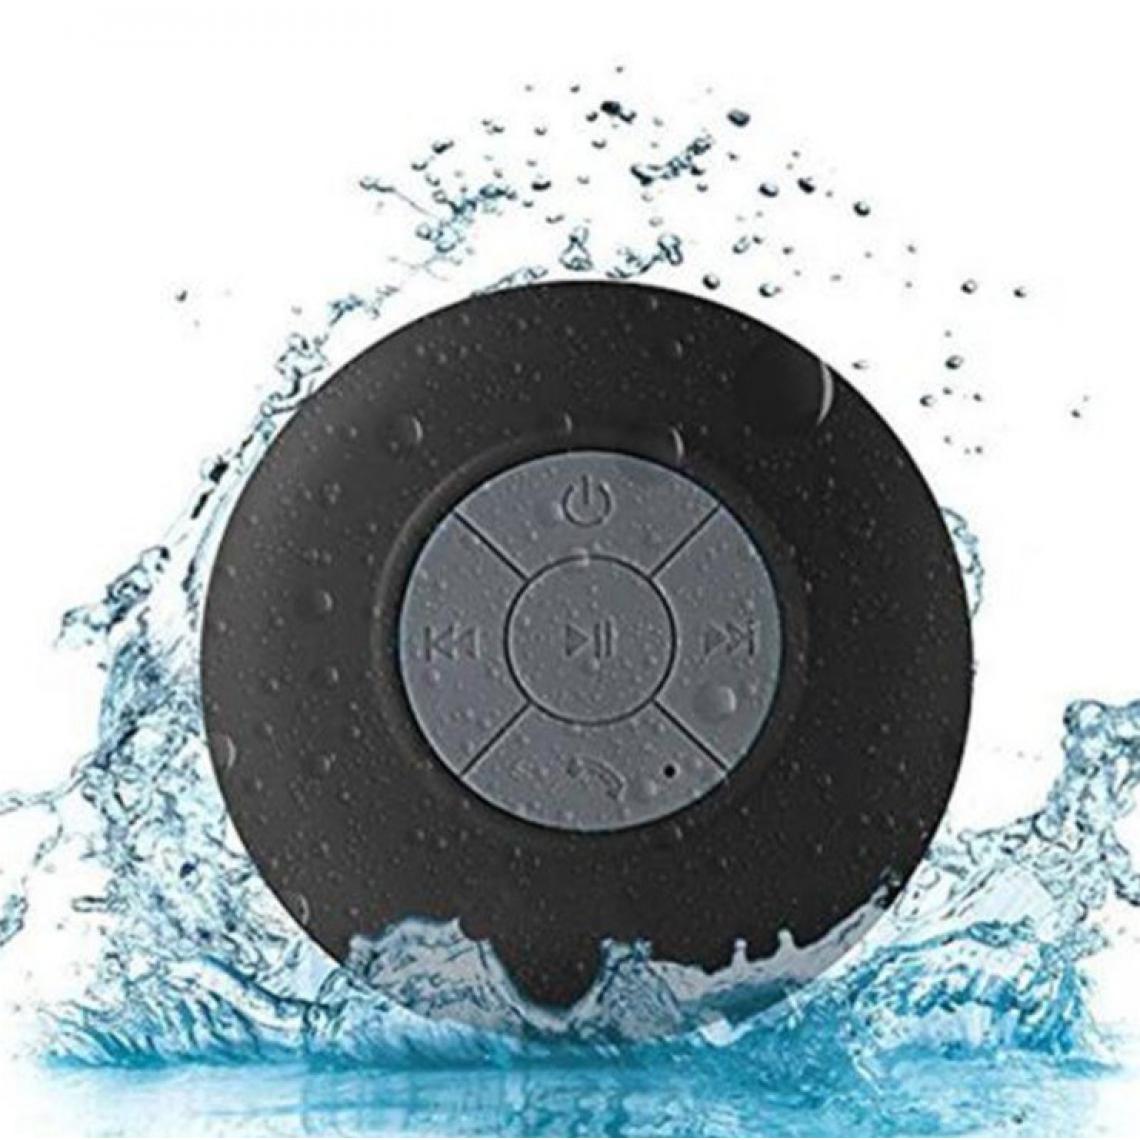 Shot - Enceinte Waterproof Bluetooth pour "SAMSUNG Galaxy S10 Lite" Smartphone Ventouse Haut-Parleur Micro Douche Petite (NOIR) - Autres accessoires smartphone